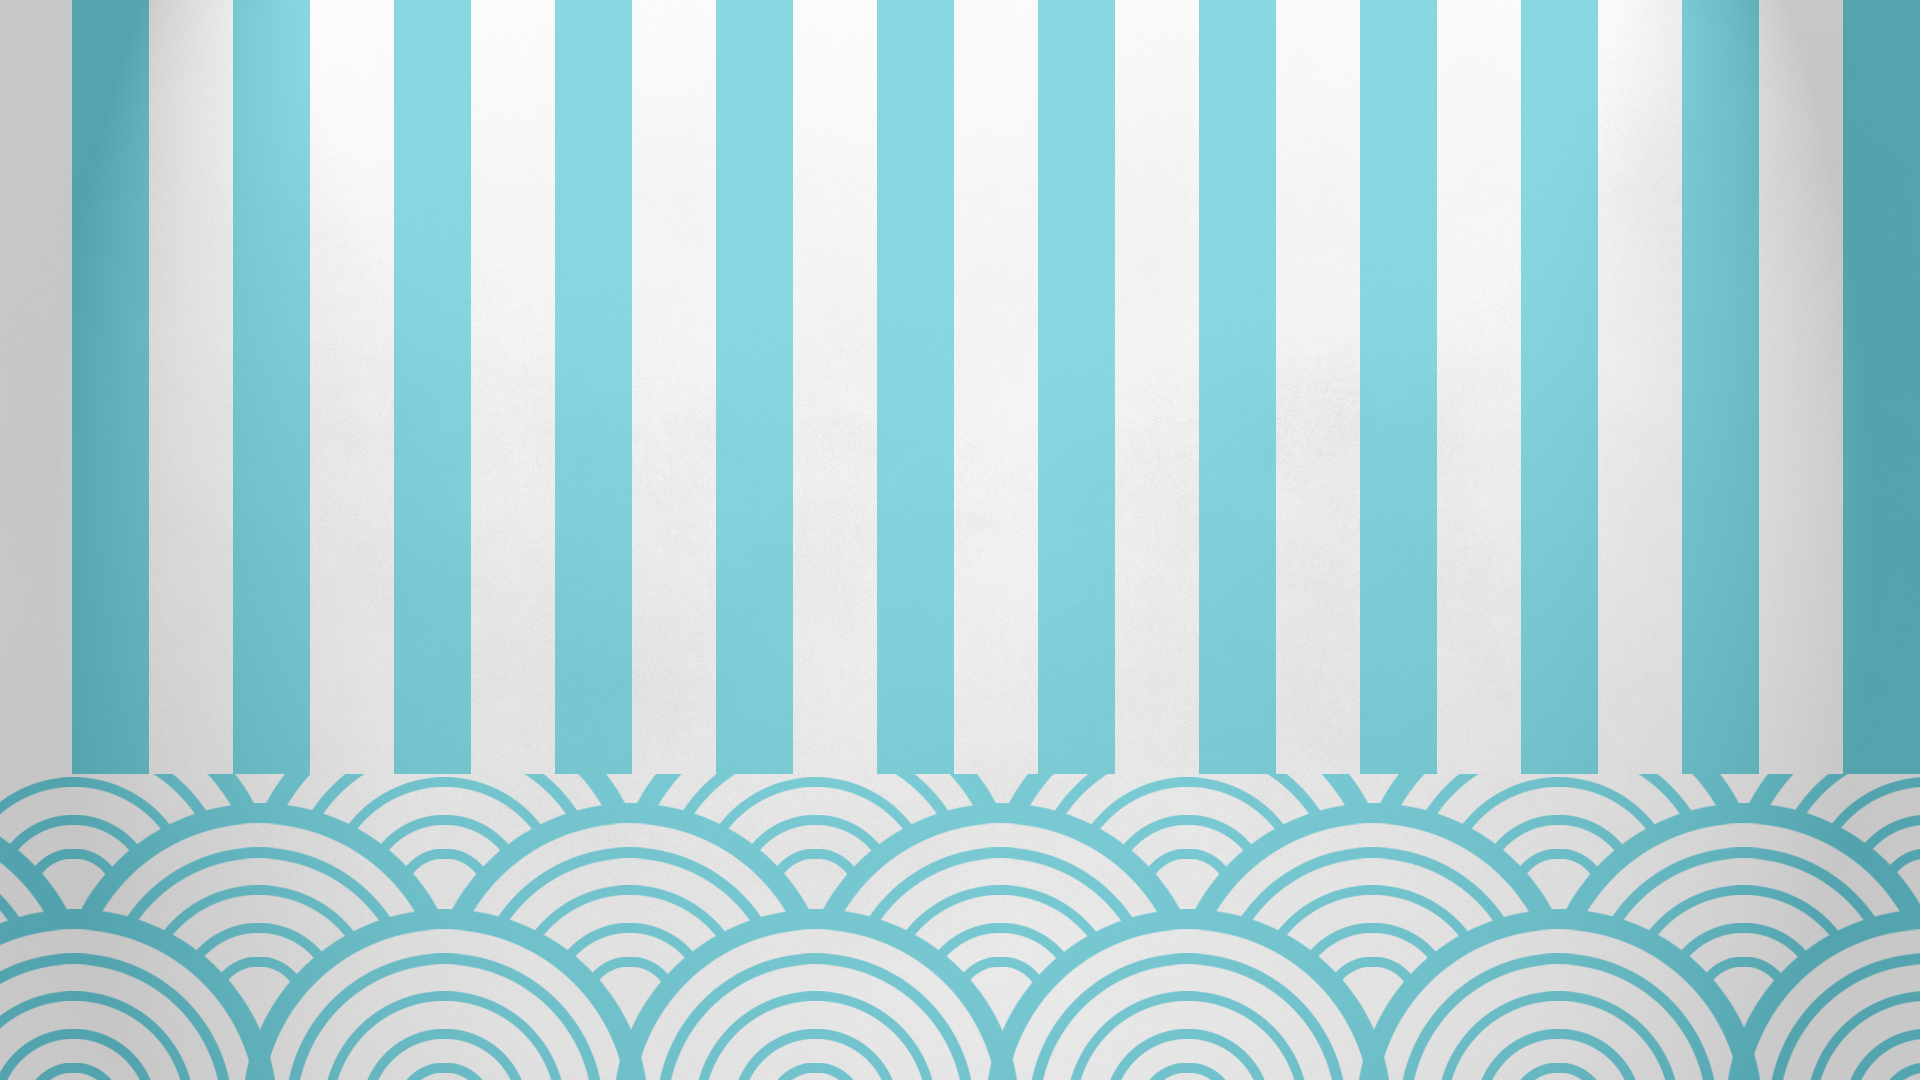 Free download Patterns Stripes Wallpaper 1920x1080 Patterns Stripes ...